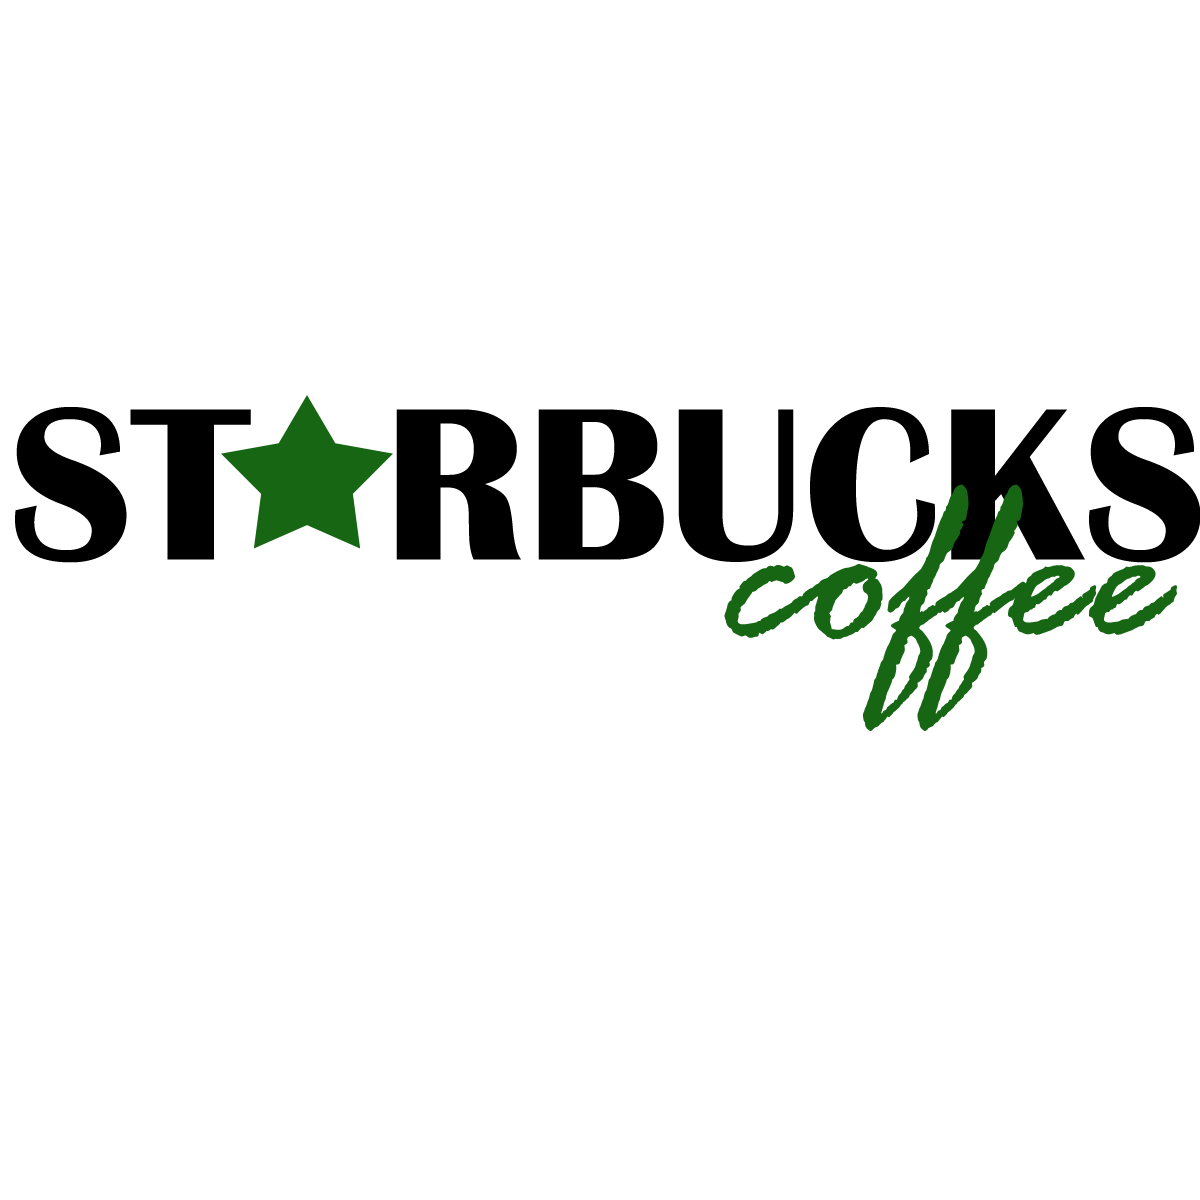 Starbucks logo font - skinnyklo